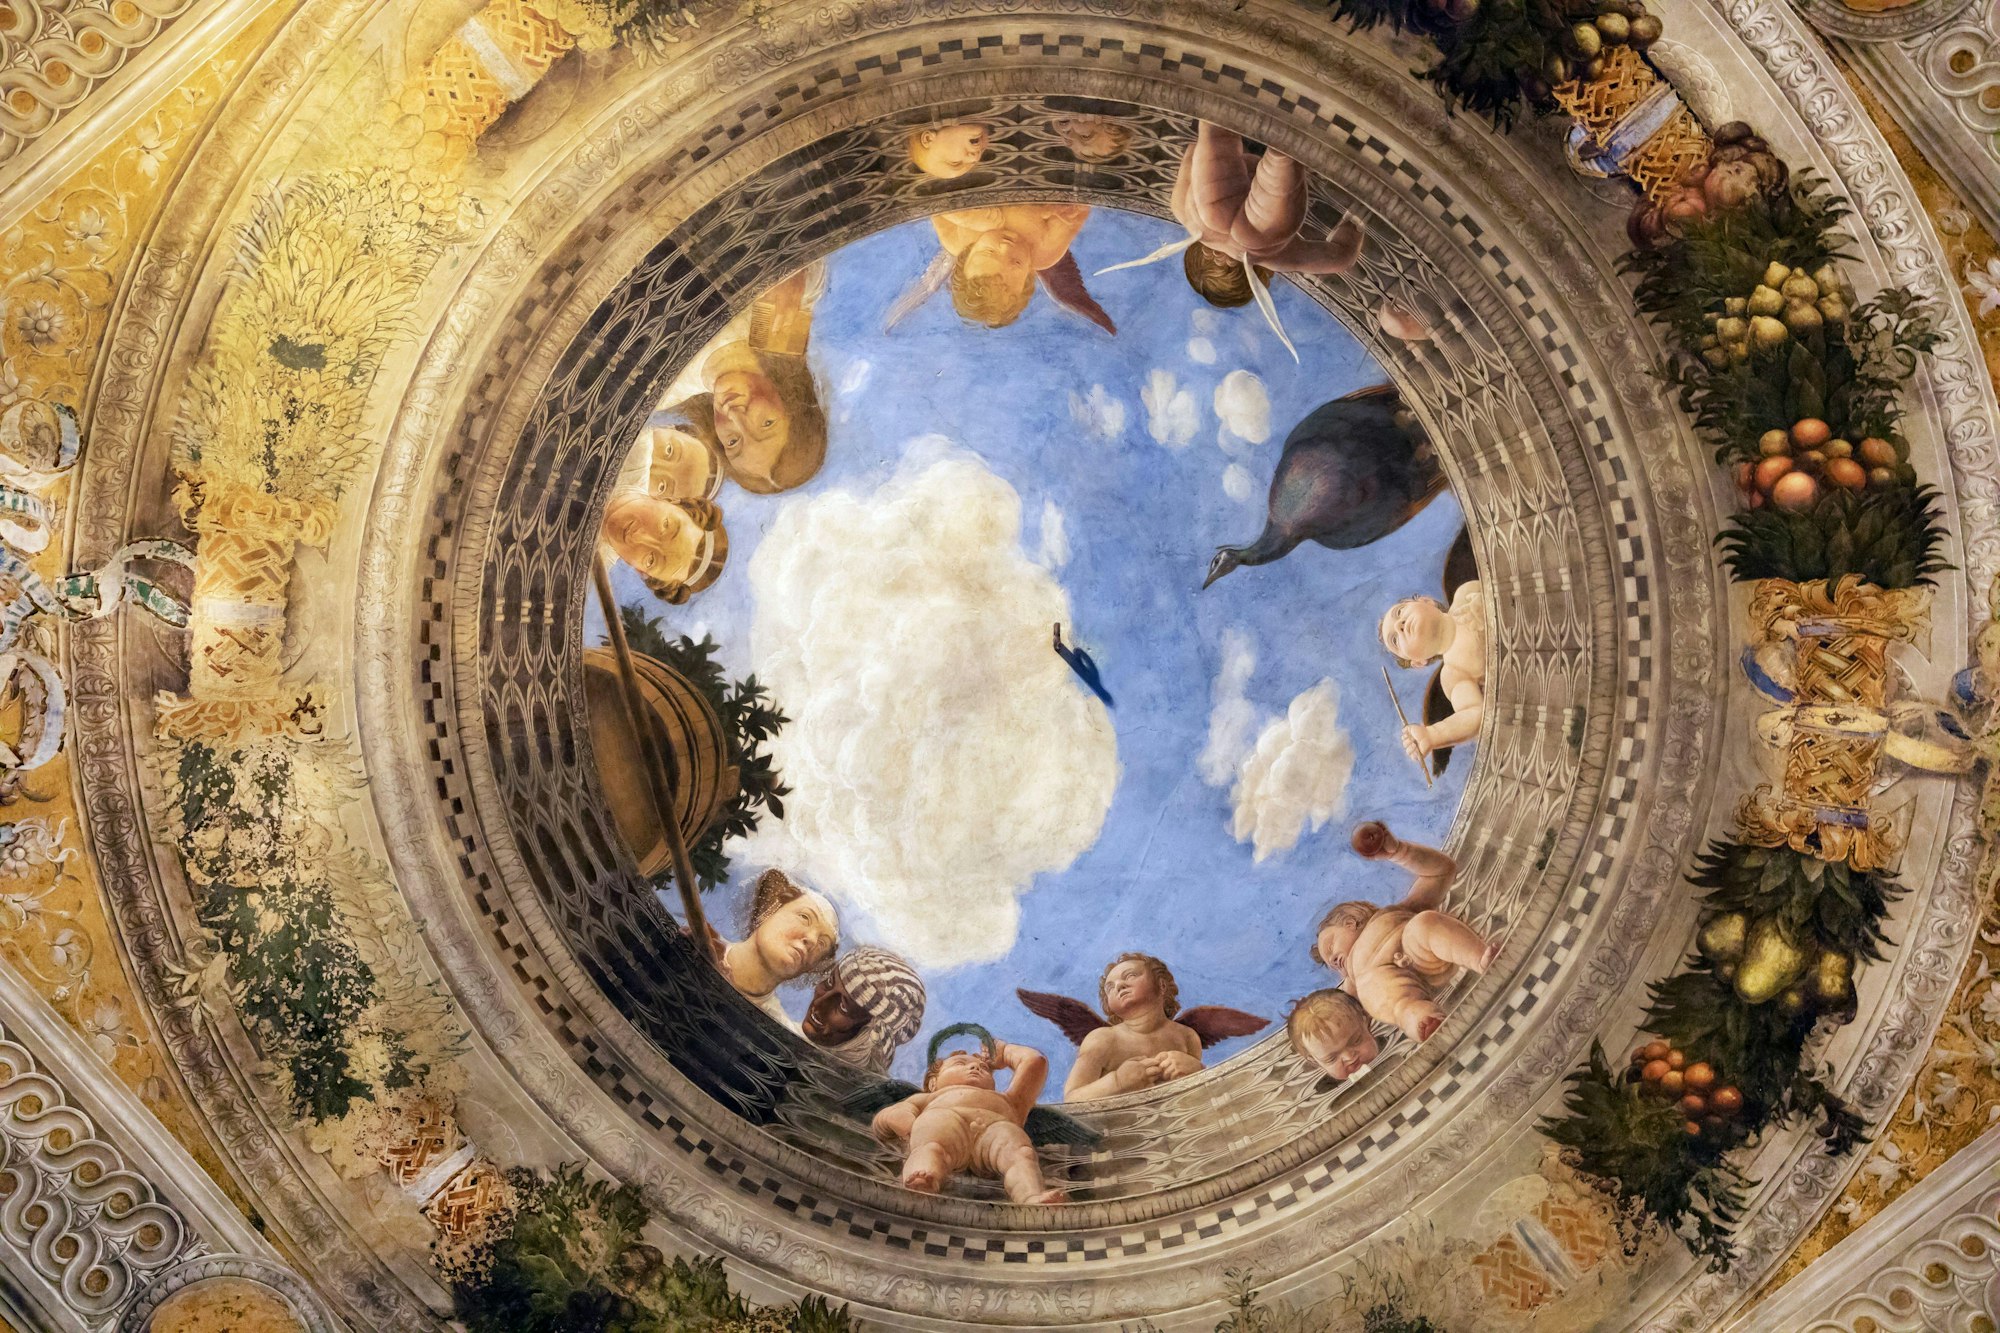 Andrea Mantegna Camera degli Sposi (or Bridal Chamber) 1471 (detail), Palazzo Ducale di Urbino, Mantua, Italy